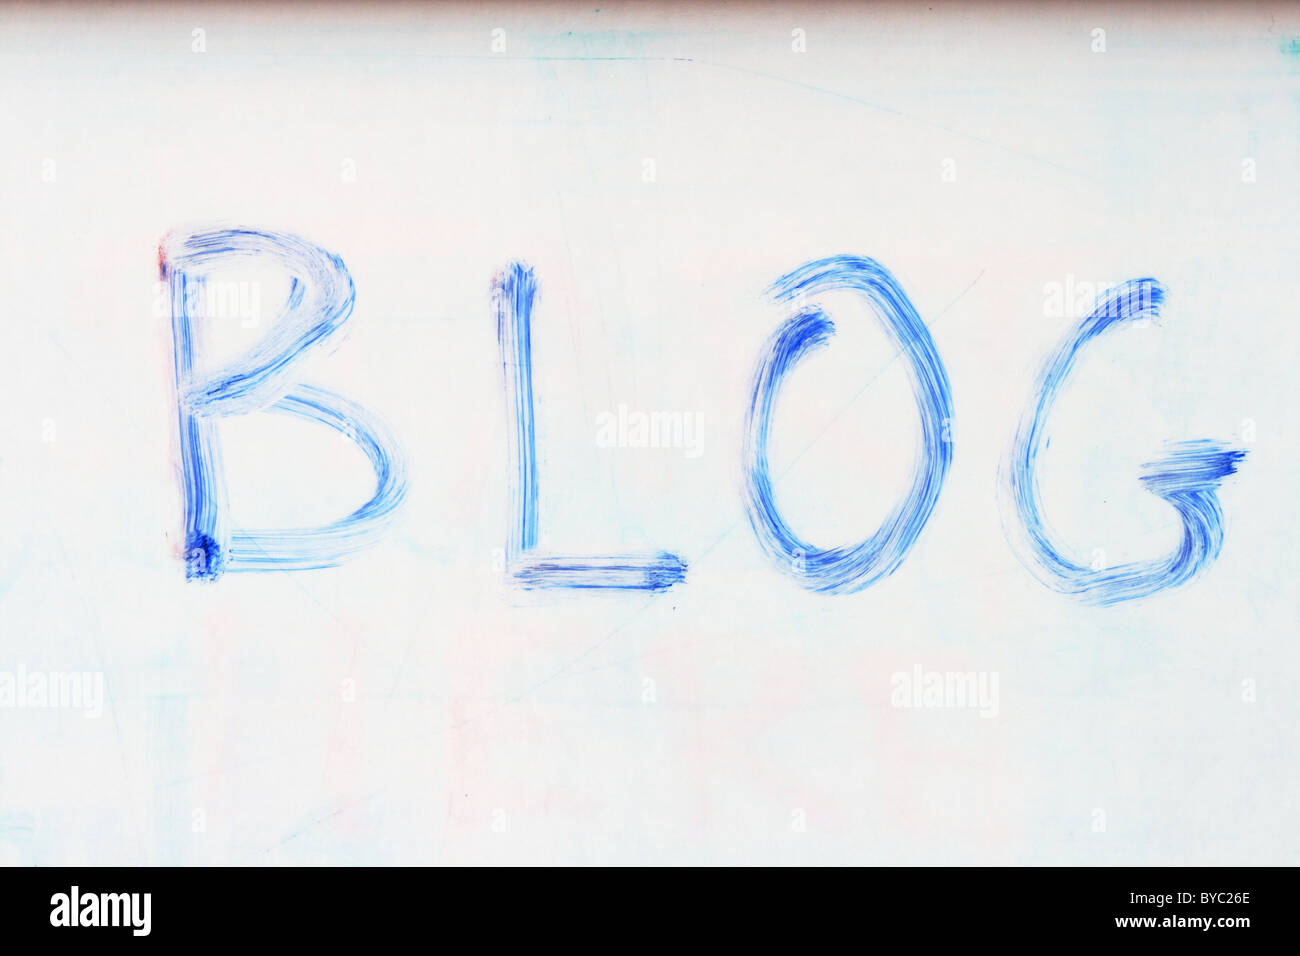 Le mot blog écrit sur un tableau blanc avec un vieux marqueur bleu Banque D'Images